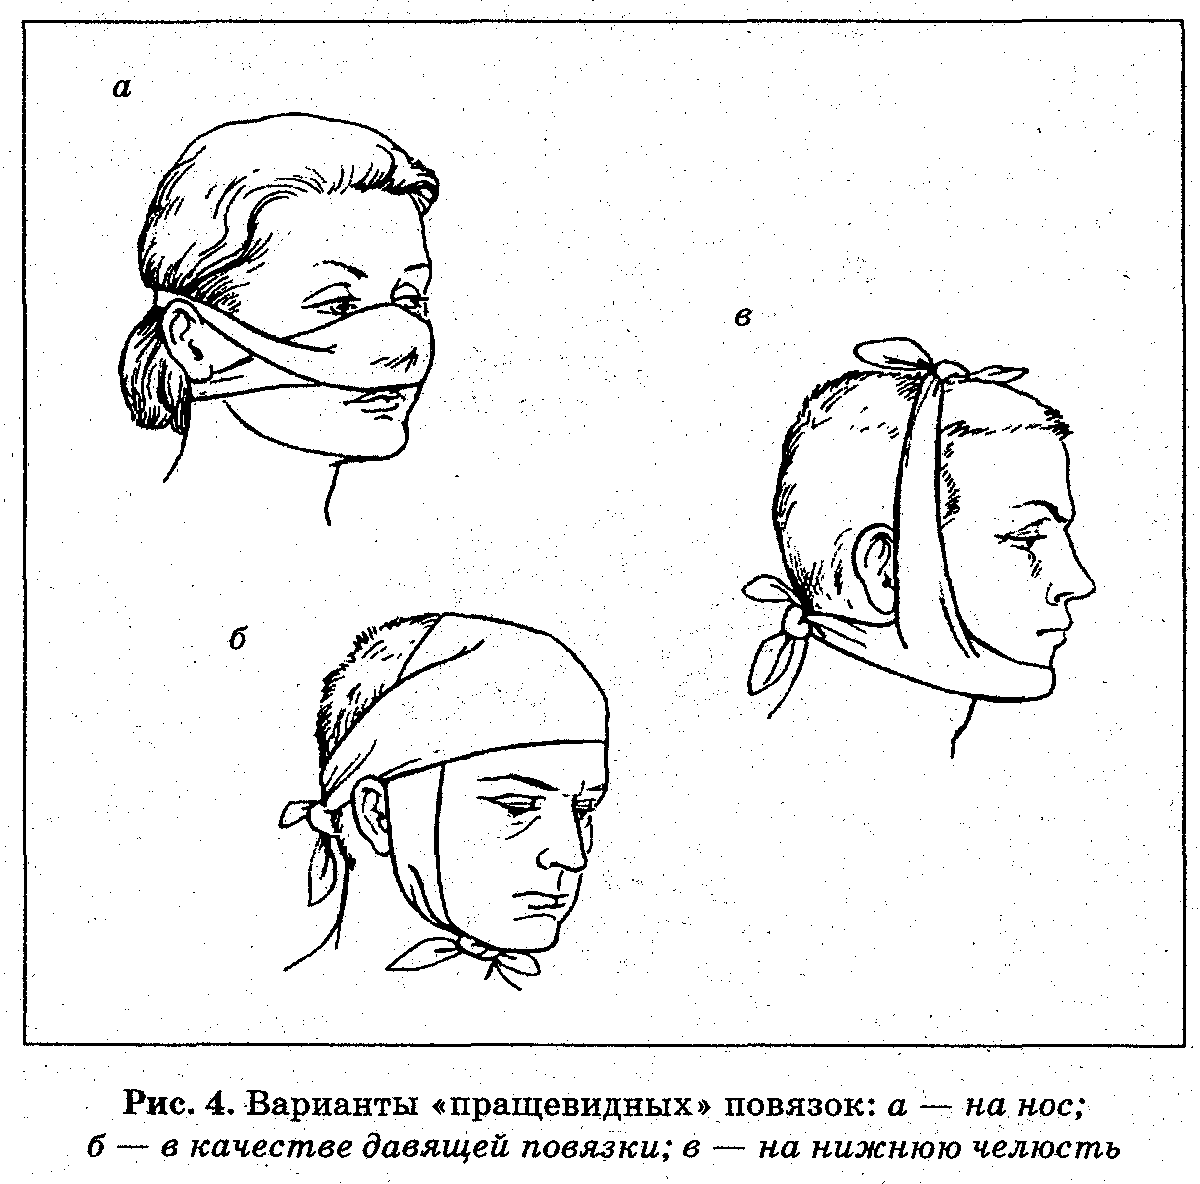 Медицинская помощь при травмах головы